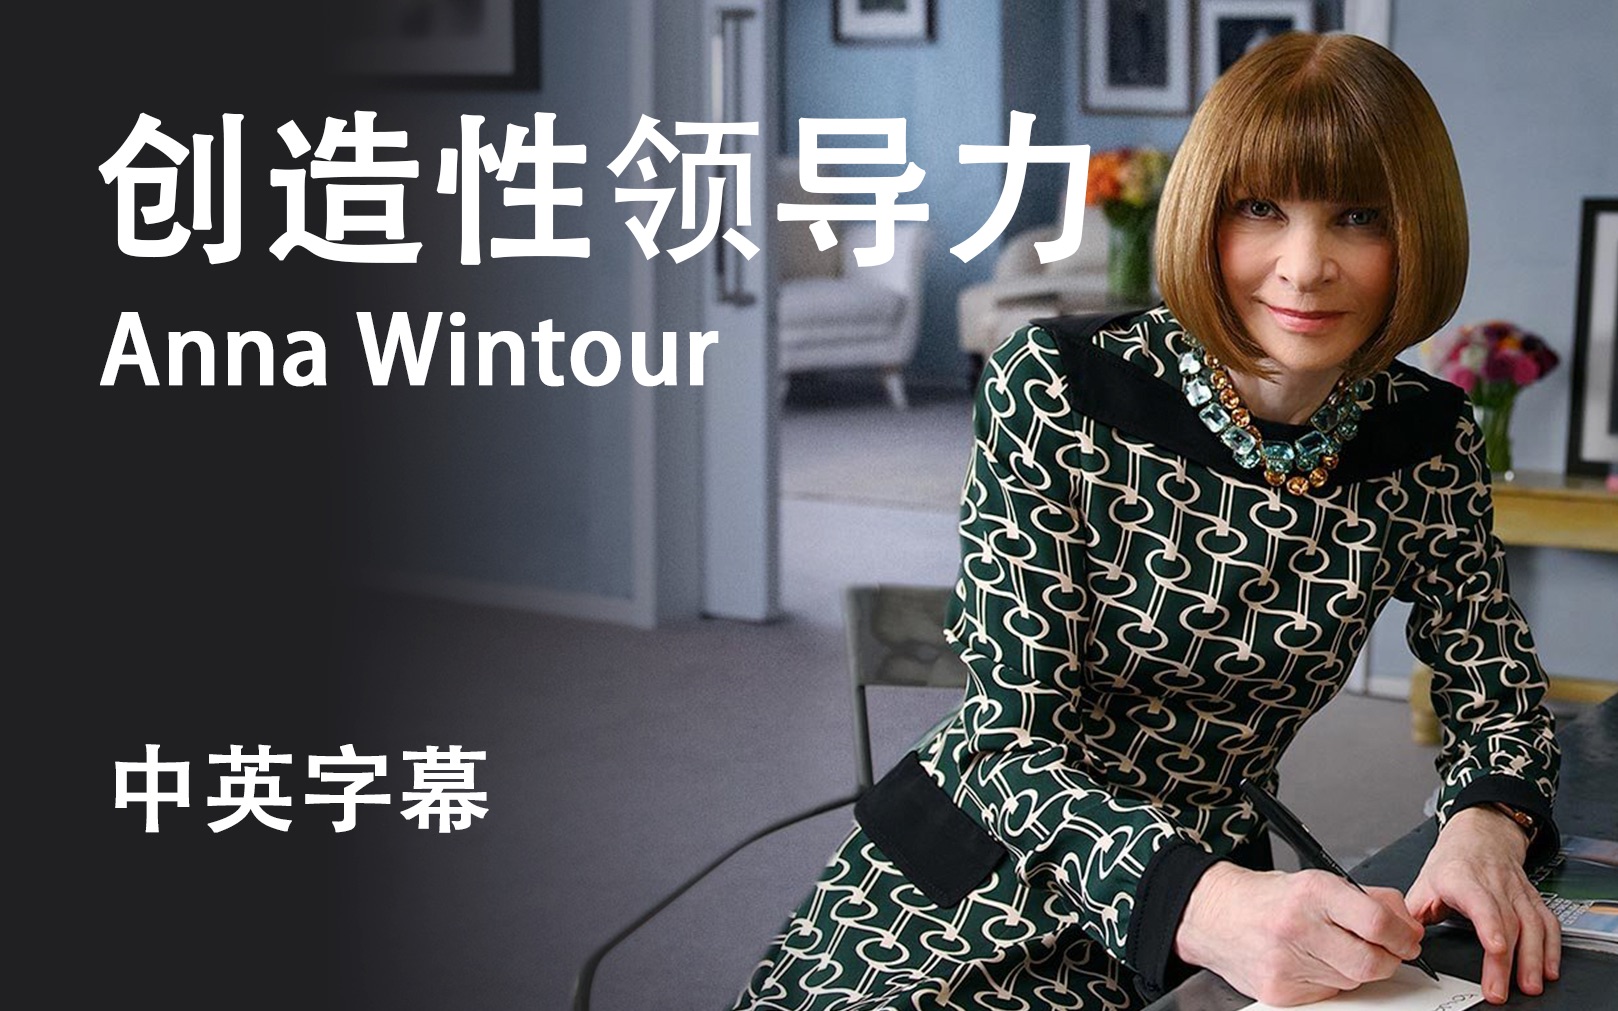 【大师课】[中英字幕]时尚女王 安娜·温图尔Anna Wintour 教你如何领导和提高创造力